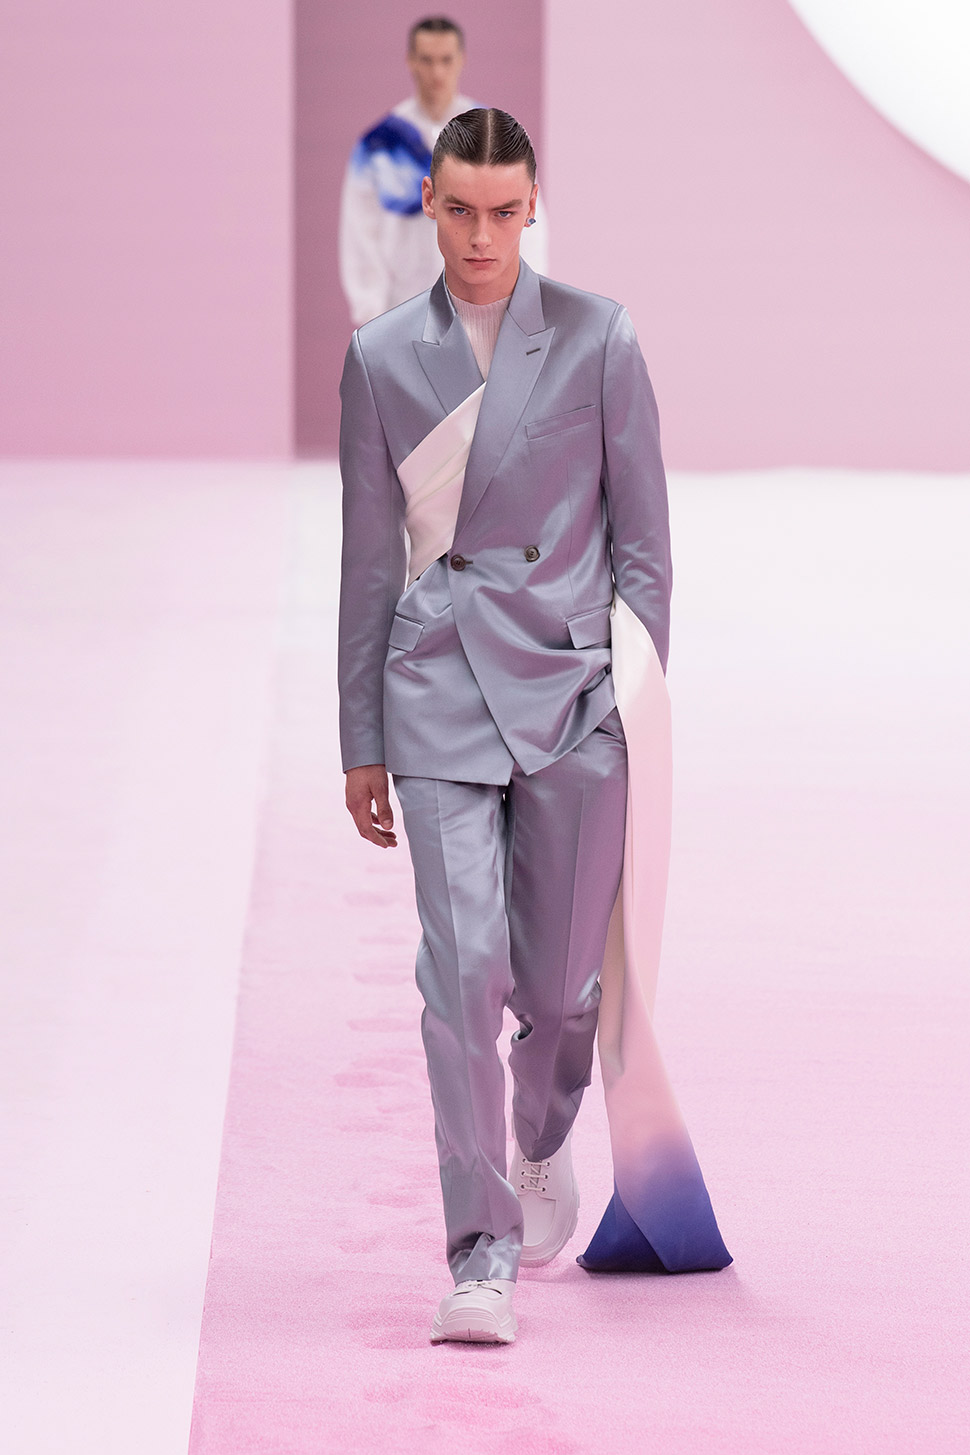 Christian Dior Suits Outlet Websites, Save 66% | jlcatj.gob.mx